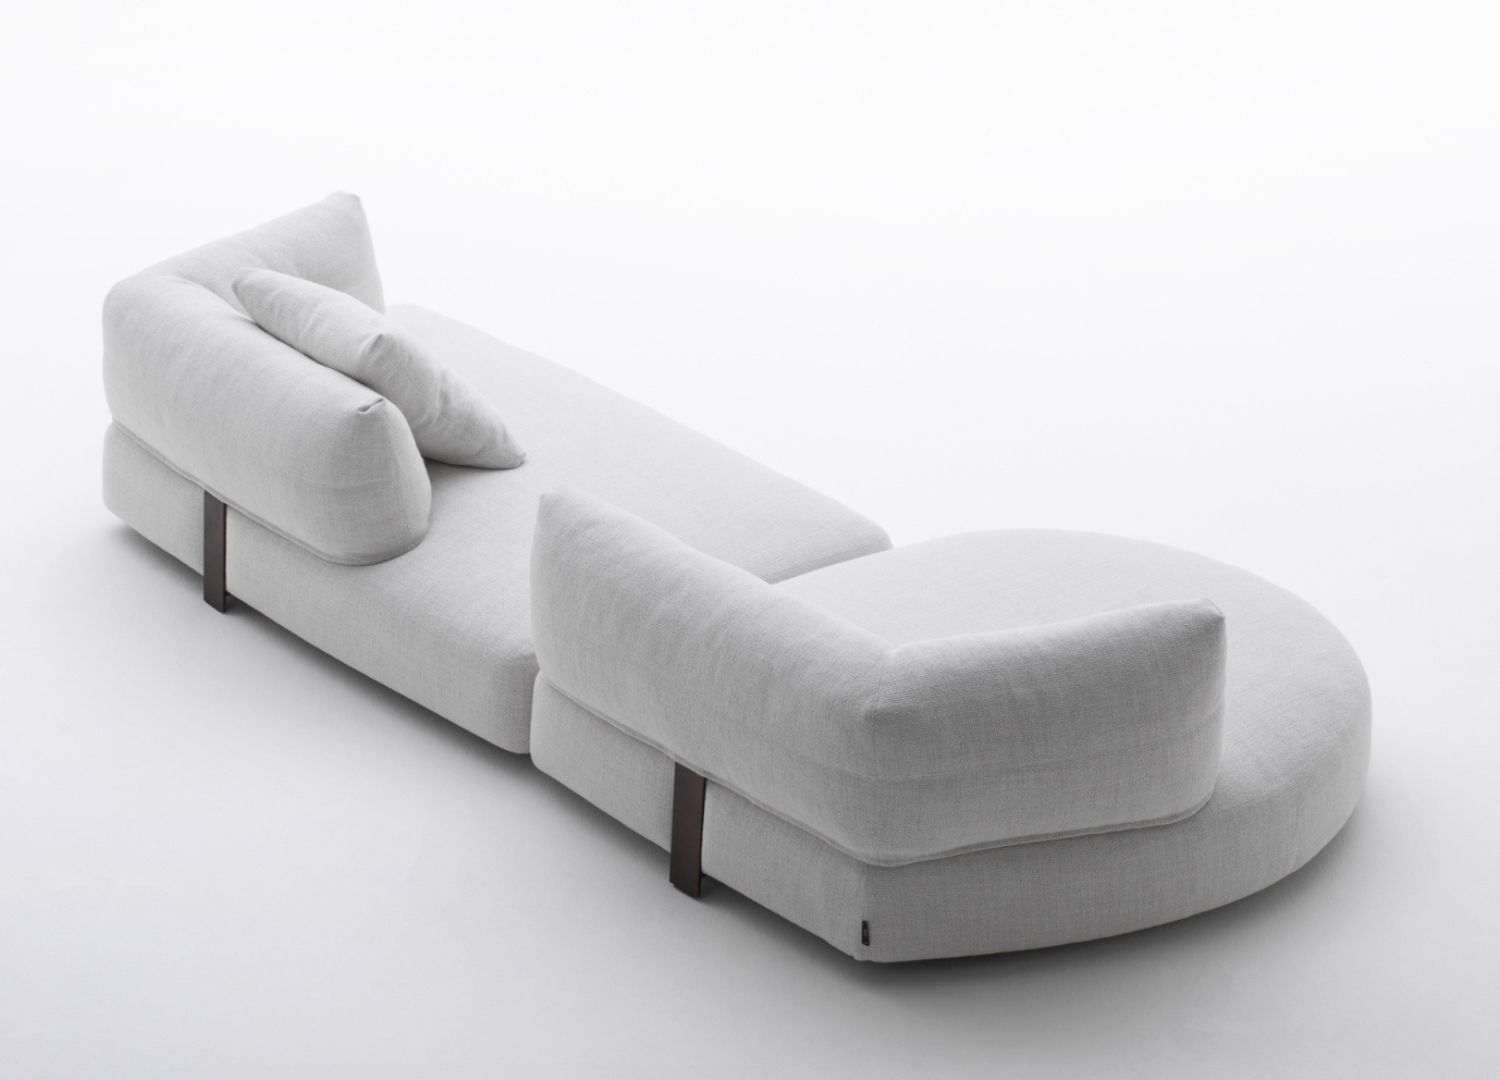 Ethìa sofa by Jay Jalan for Désirée